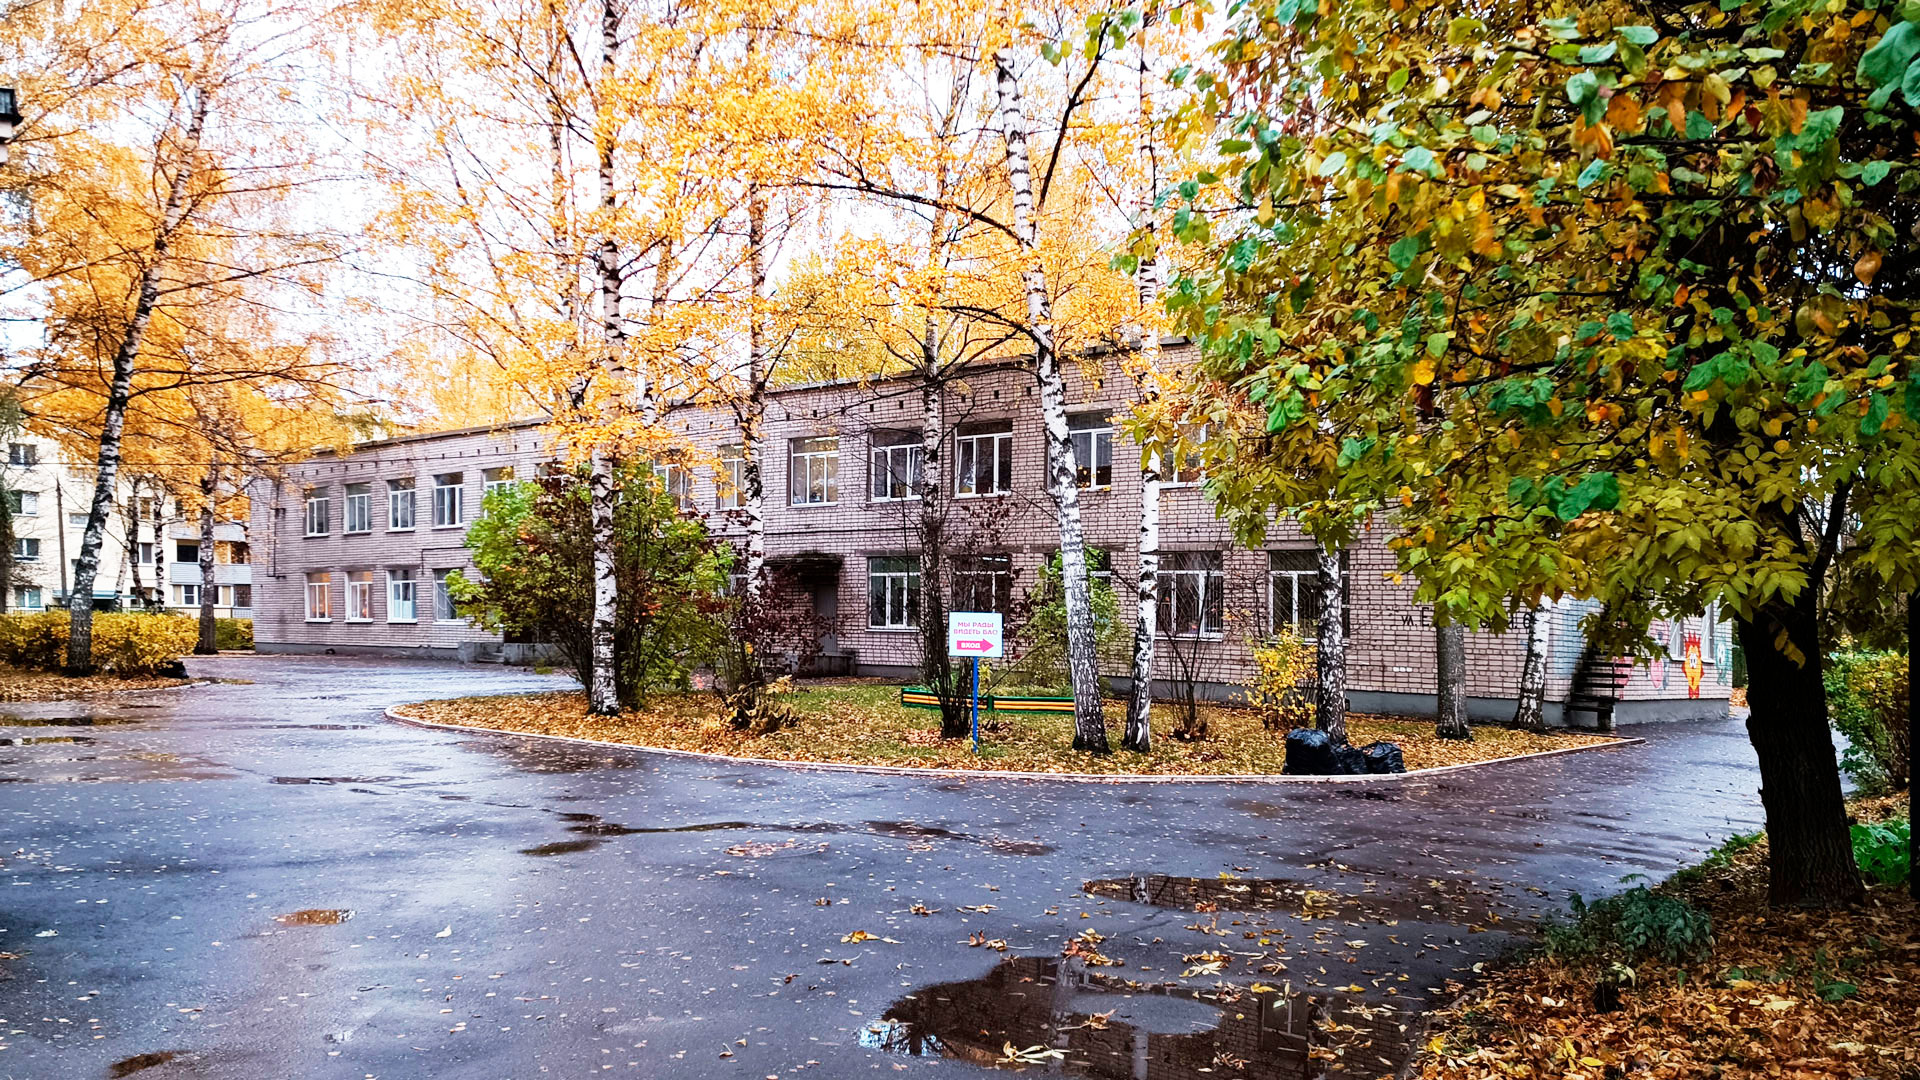 Детский сад 130 Ярославль: общий вид здания.